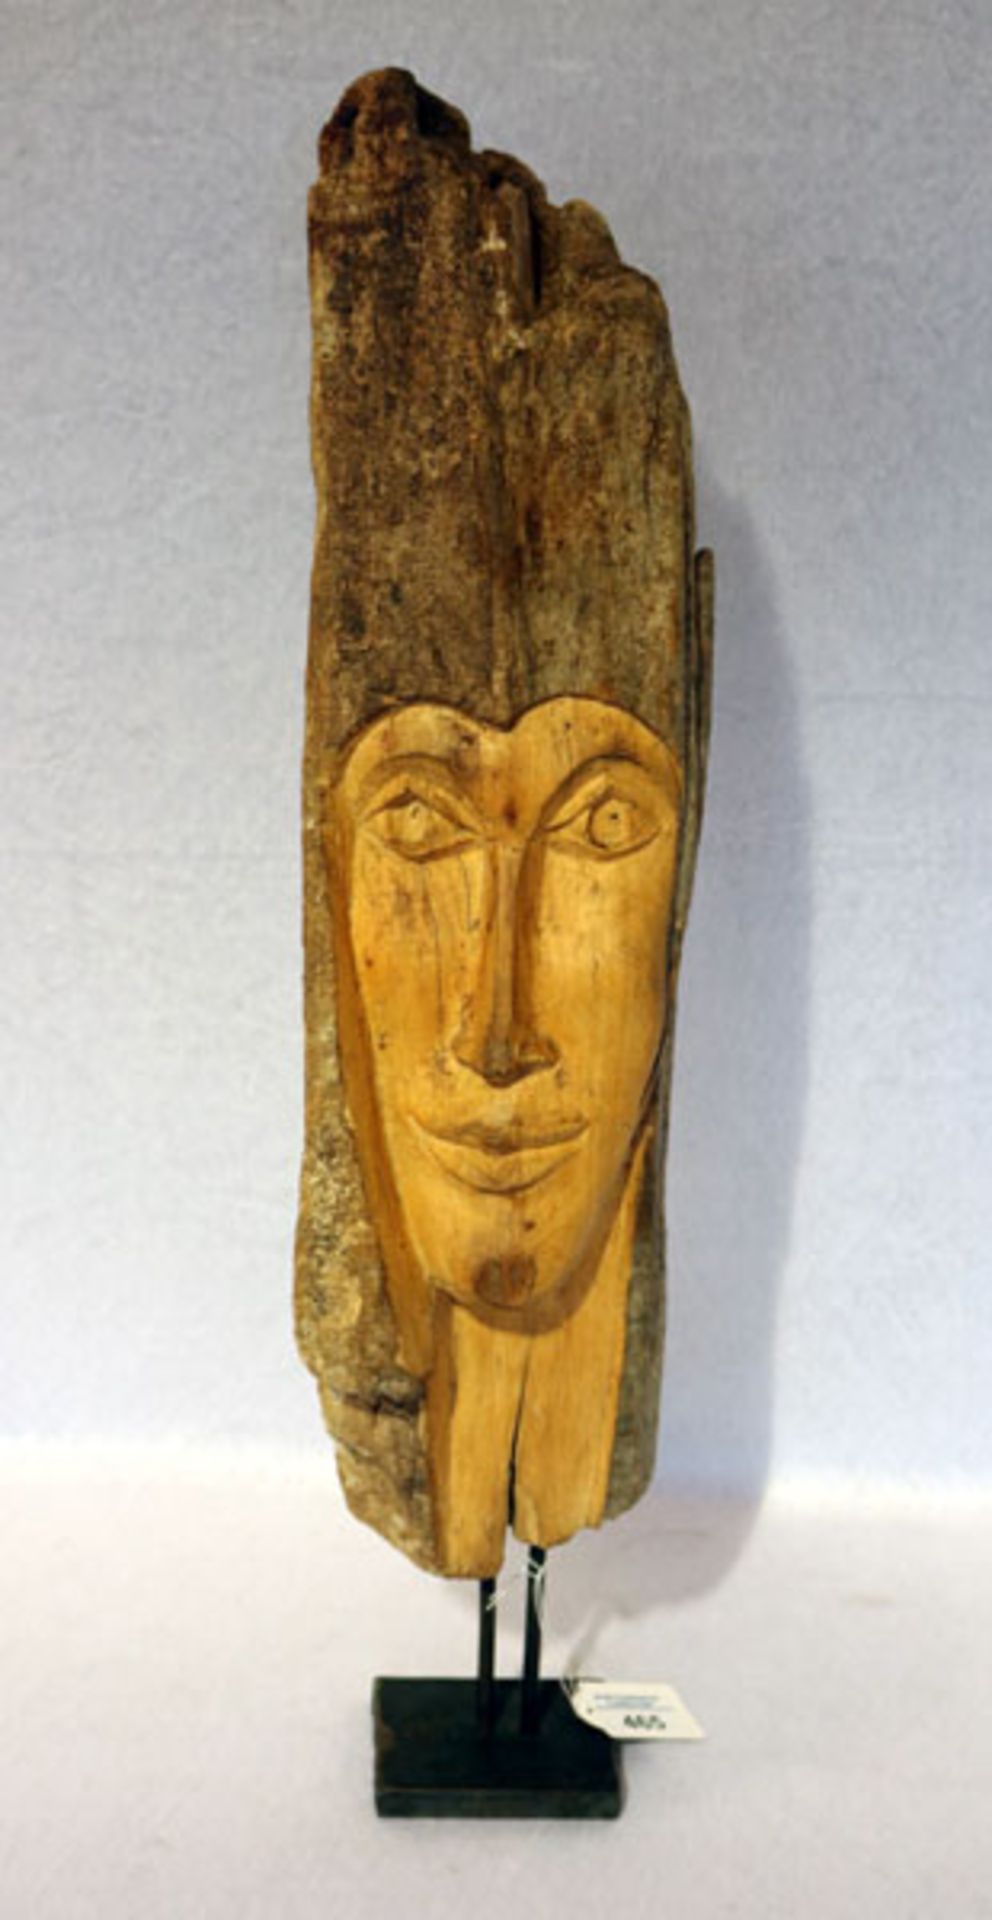 Holzskulptur 'Gesicht in Schwemmholz' auf Metallfuß, H 59 cm, B 13 cm, T 8 cm